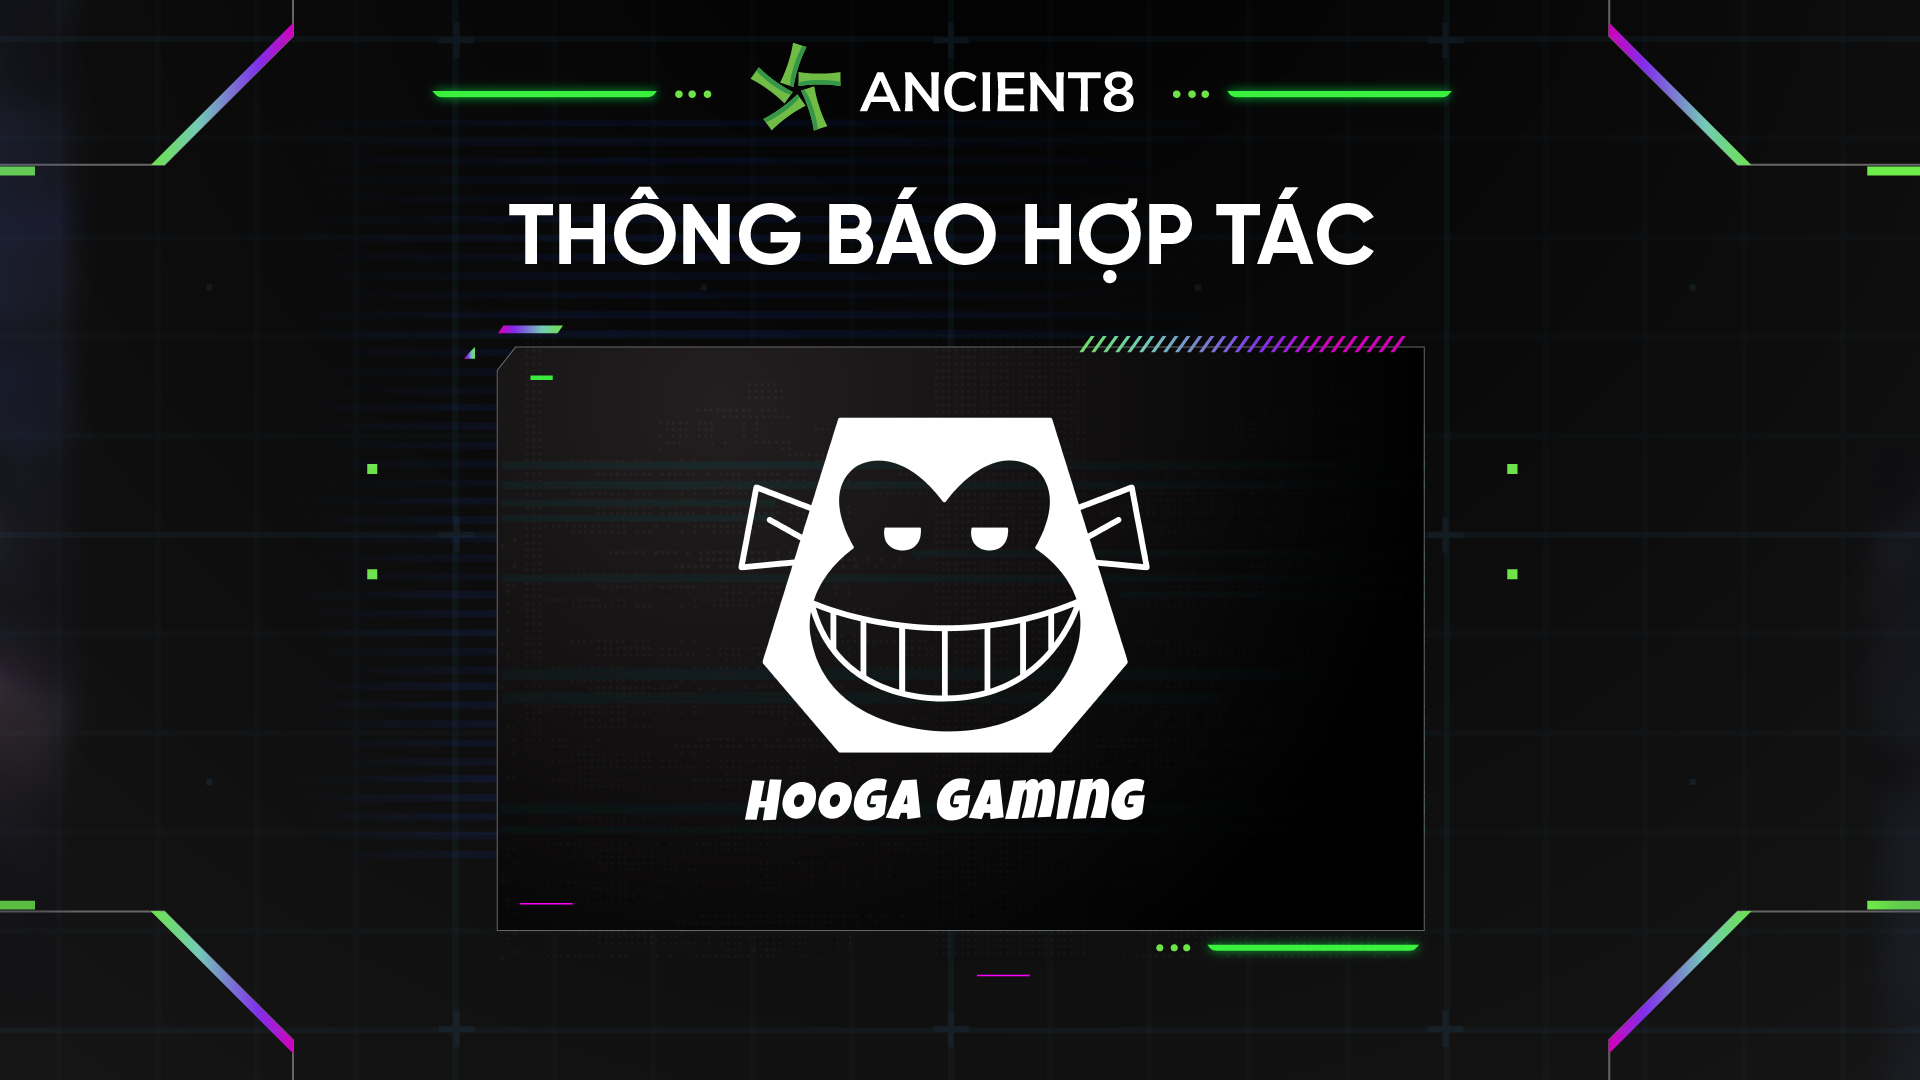 Ancient8 hợp tác với Hooga Gaming tiên phong trong việc tạo ra một nền kinh tế 'Play to earn' công bằng